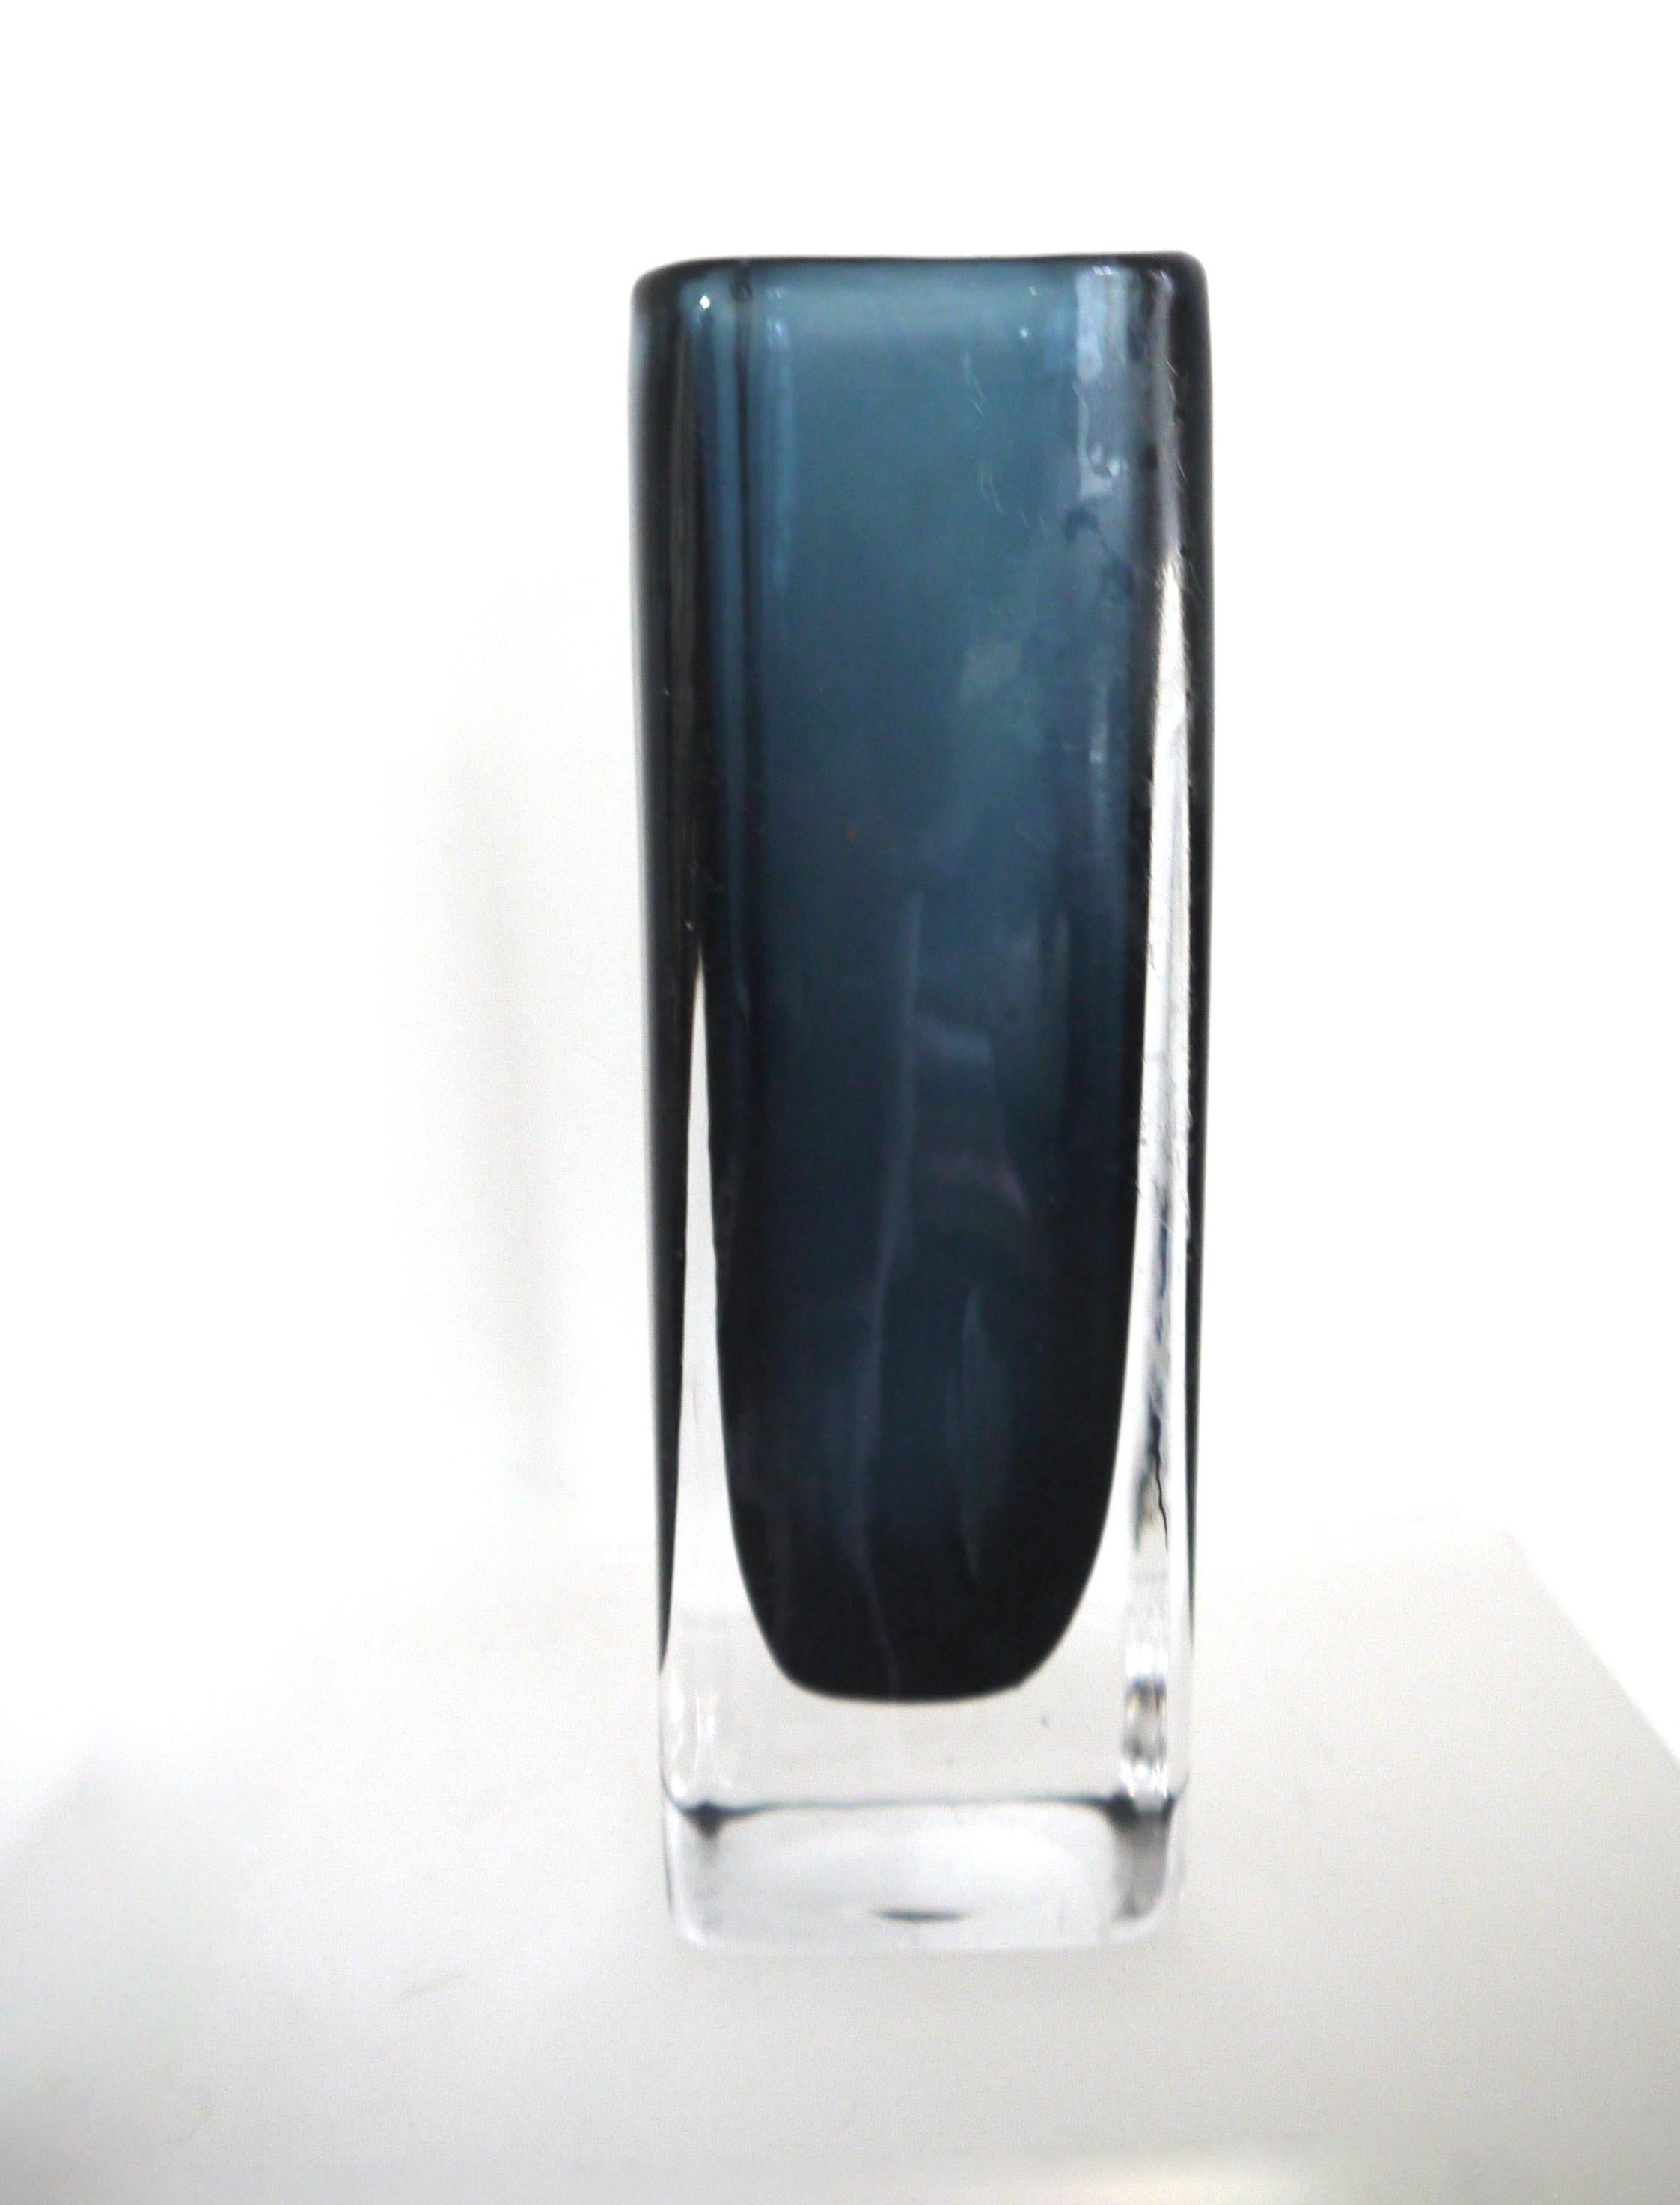 Glass vase by Nils Landberg for Orrefors for the 